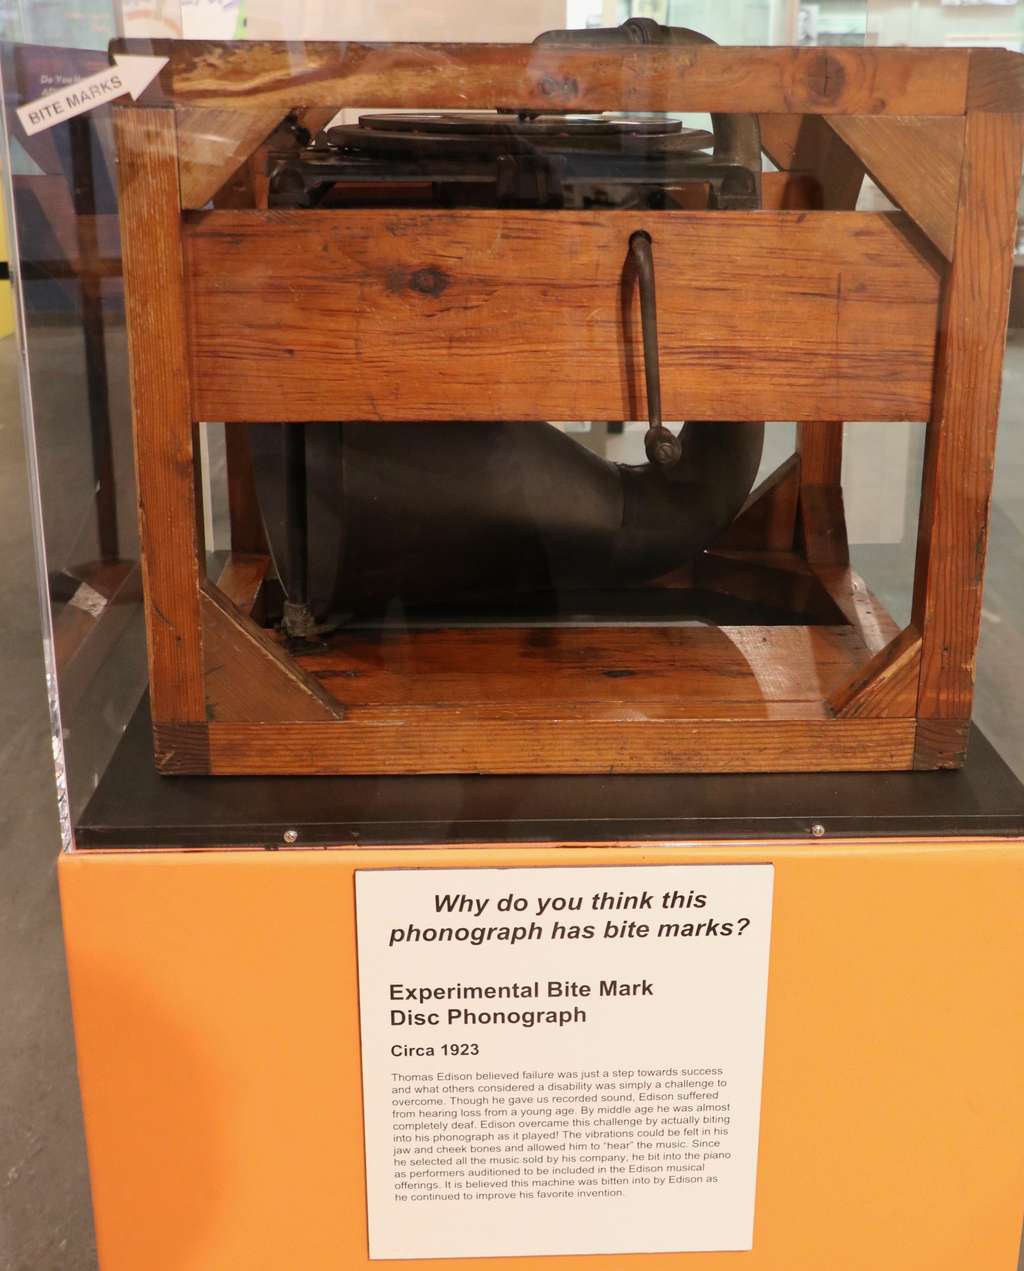 D'après le musée Edison, cet appareil porte les marques de dents de son inventeur. © Our Next Horizon